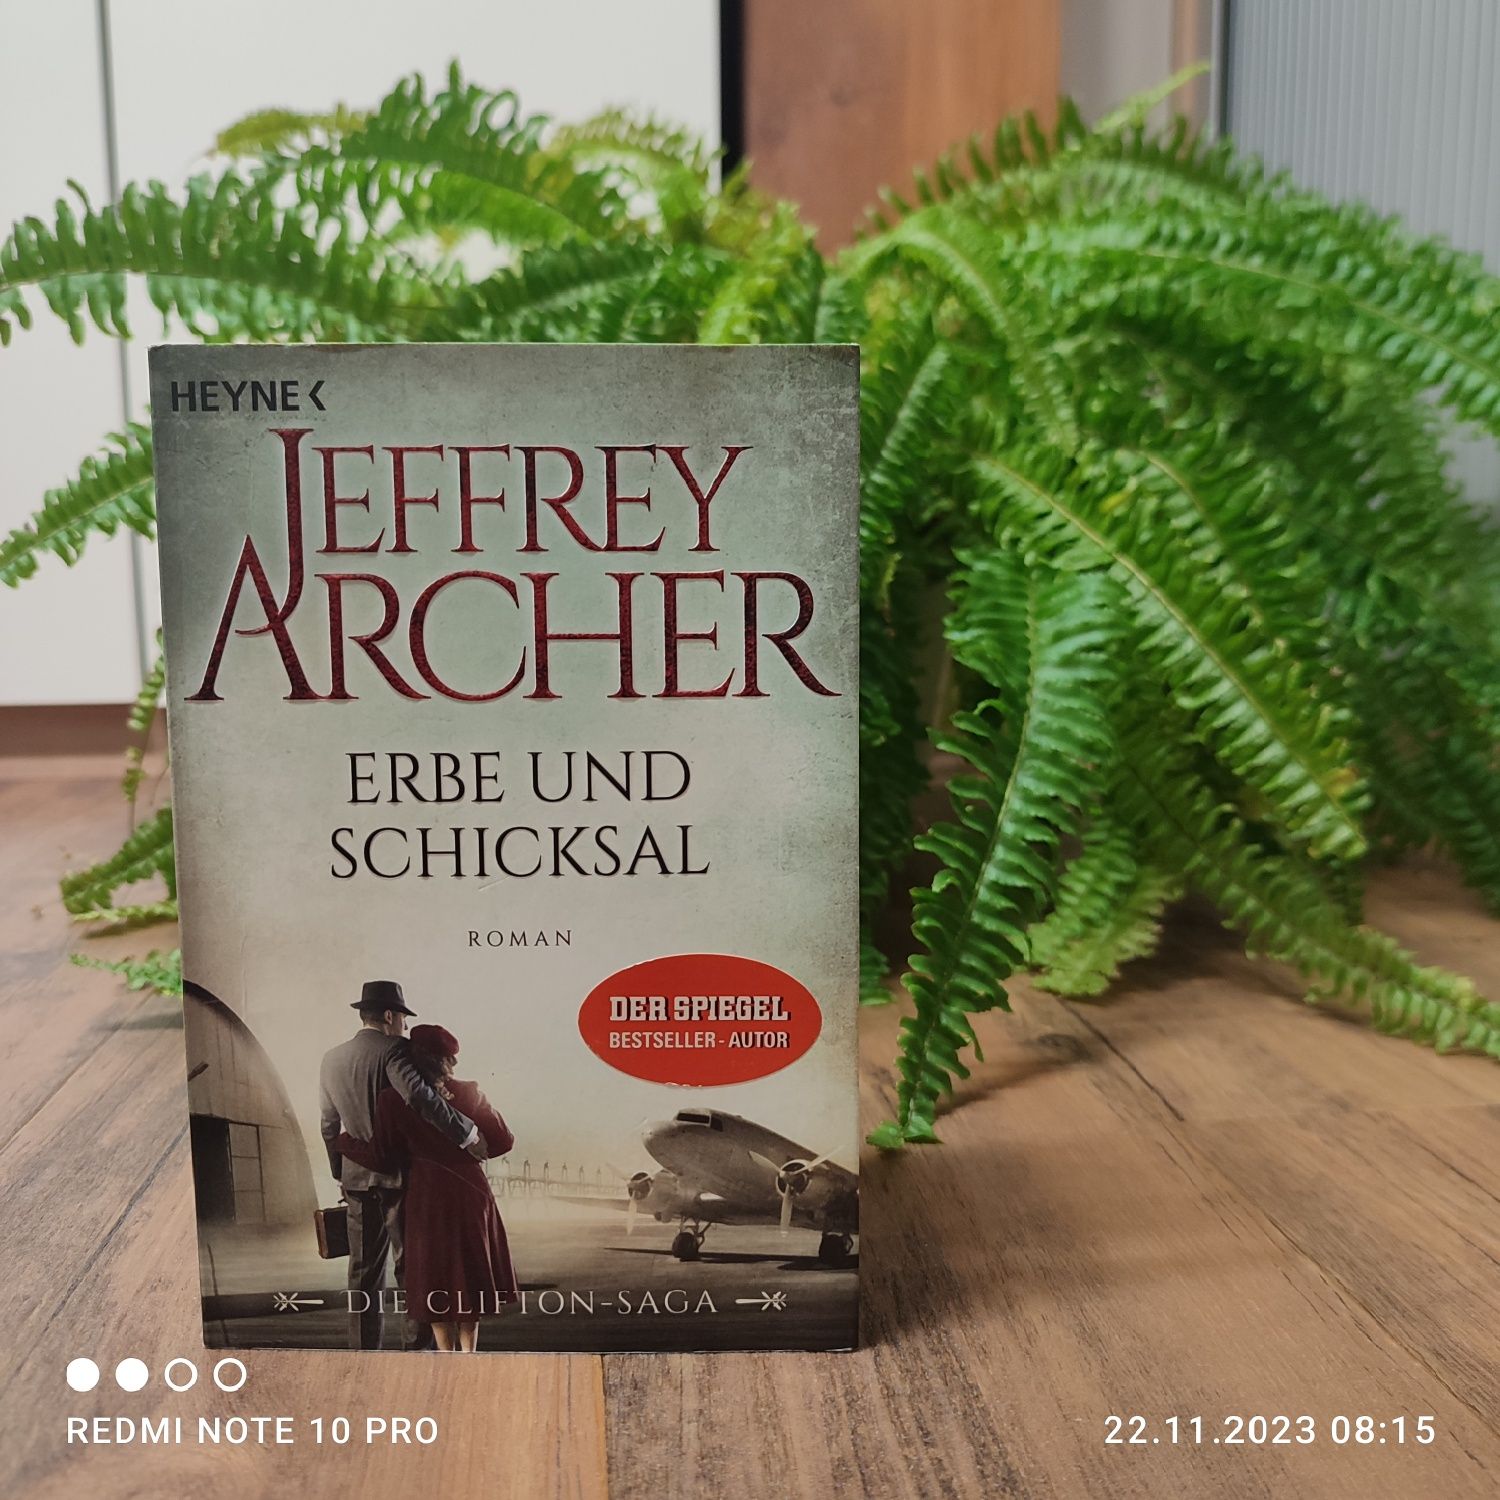 Jeffrey Archer Erbe und Schicksal książka w języku niemieckim